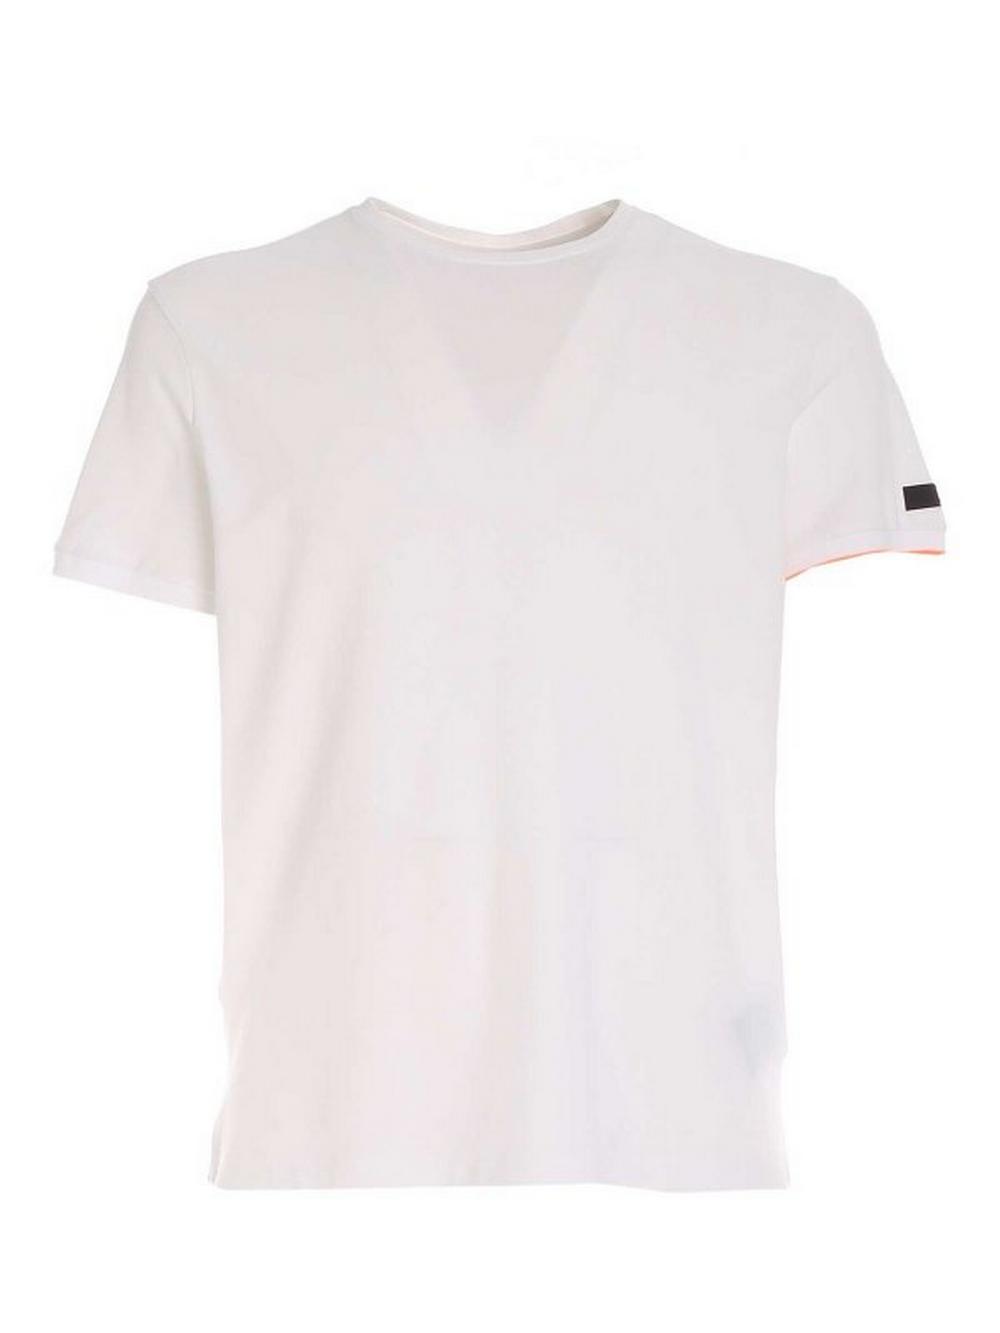 RRD - T-Shirt Piquet Bianco  - 23138